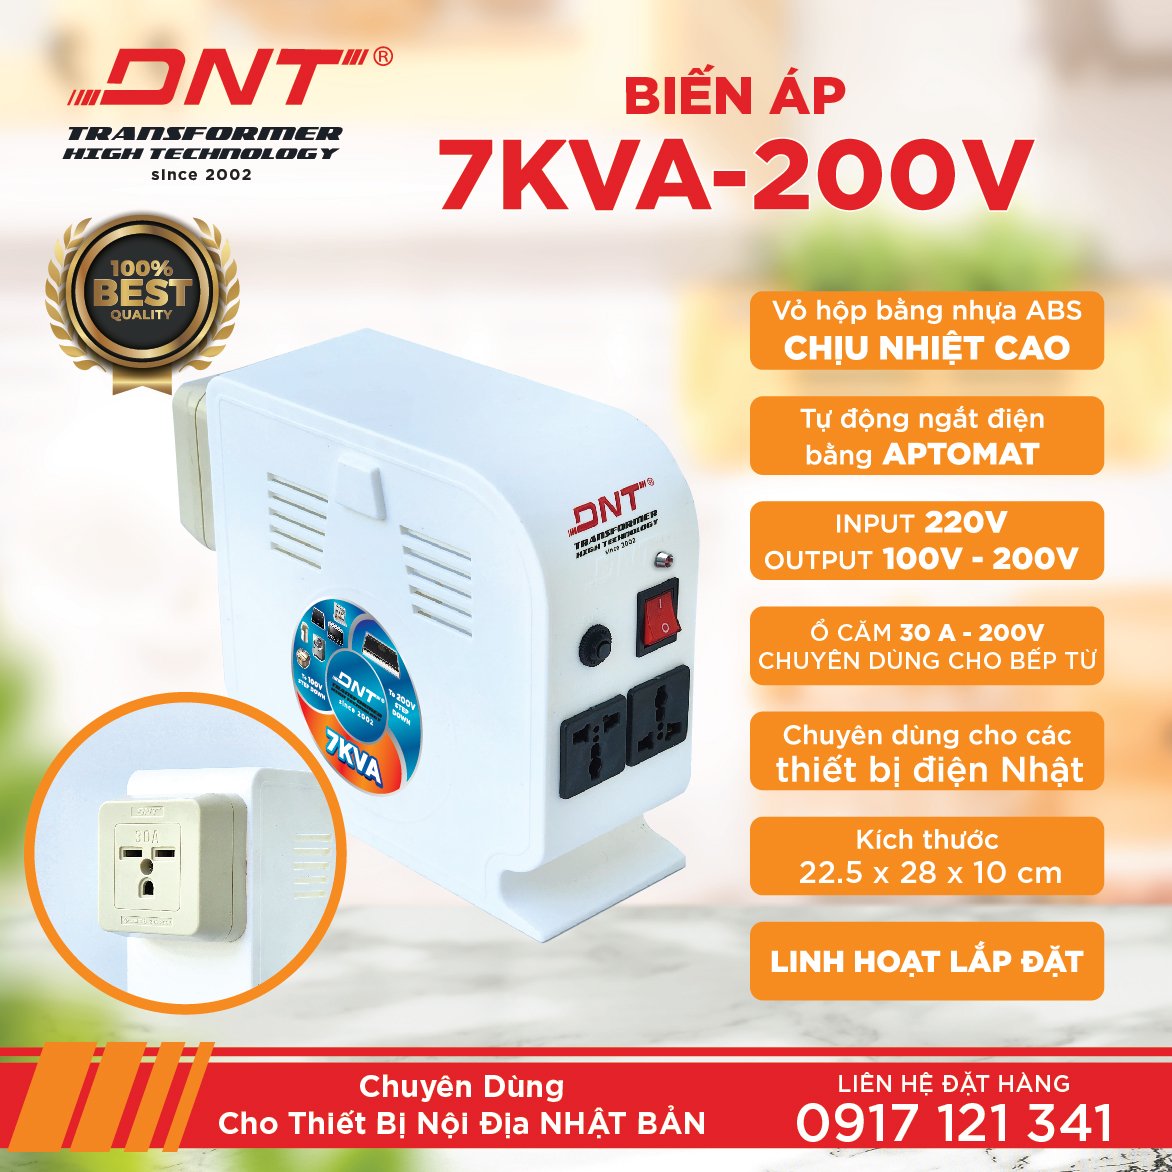 Biến áp 7KVA 220v ra 100v - 200v có ổ cắm 30A dùng cho bếp từ nhật bản